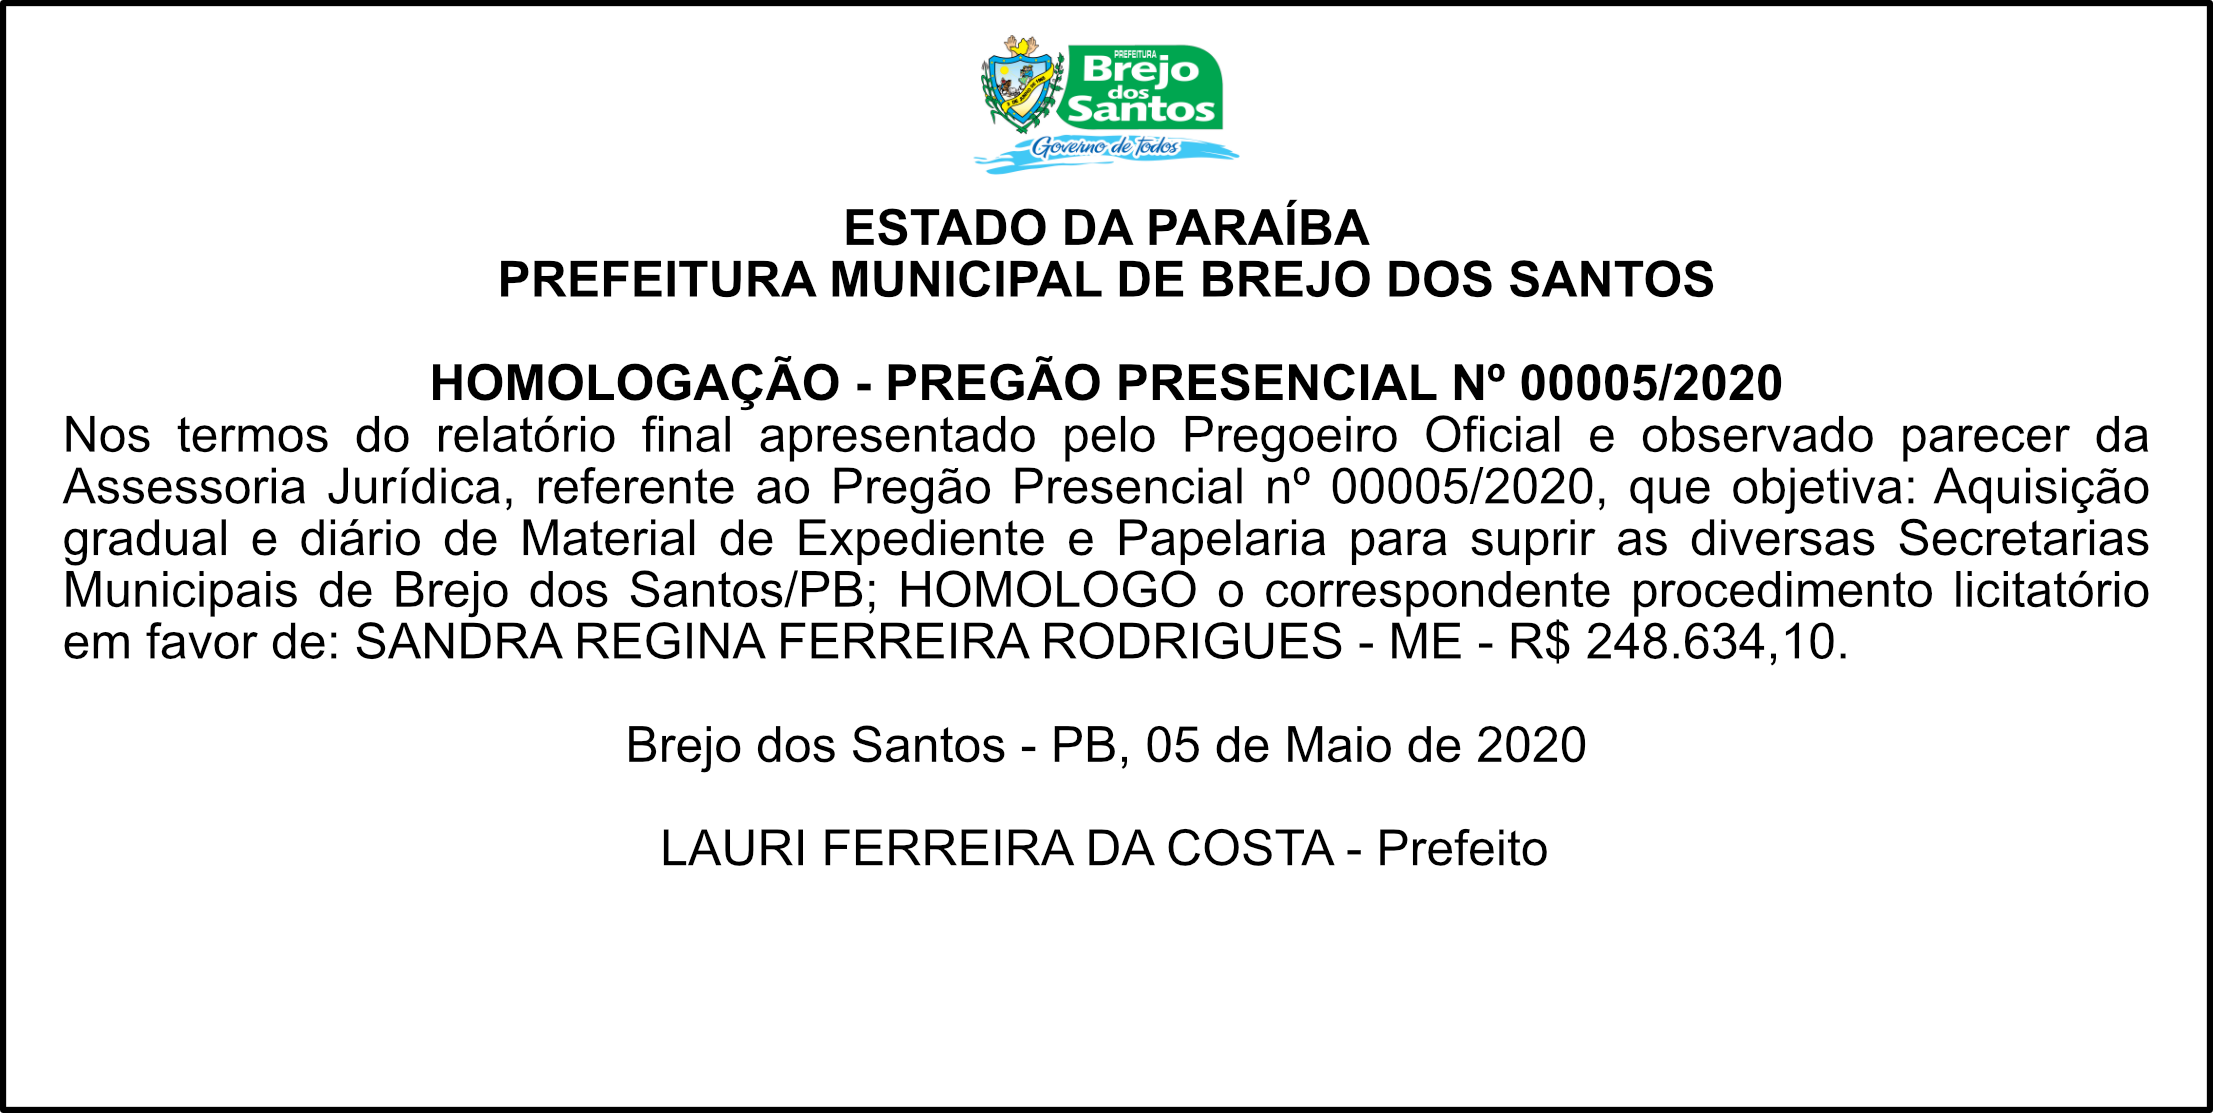 PREFEITURA MUNICIPAL DE BREJO DOS SANTOS – HOMOLOGAÇÃO – PREGÃO PRESENCIAL Nº 00005/2020